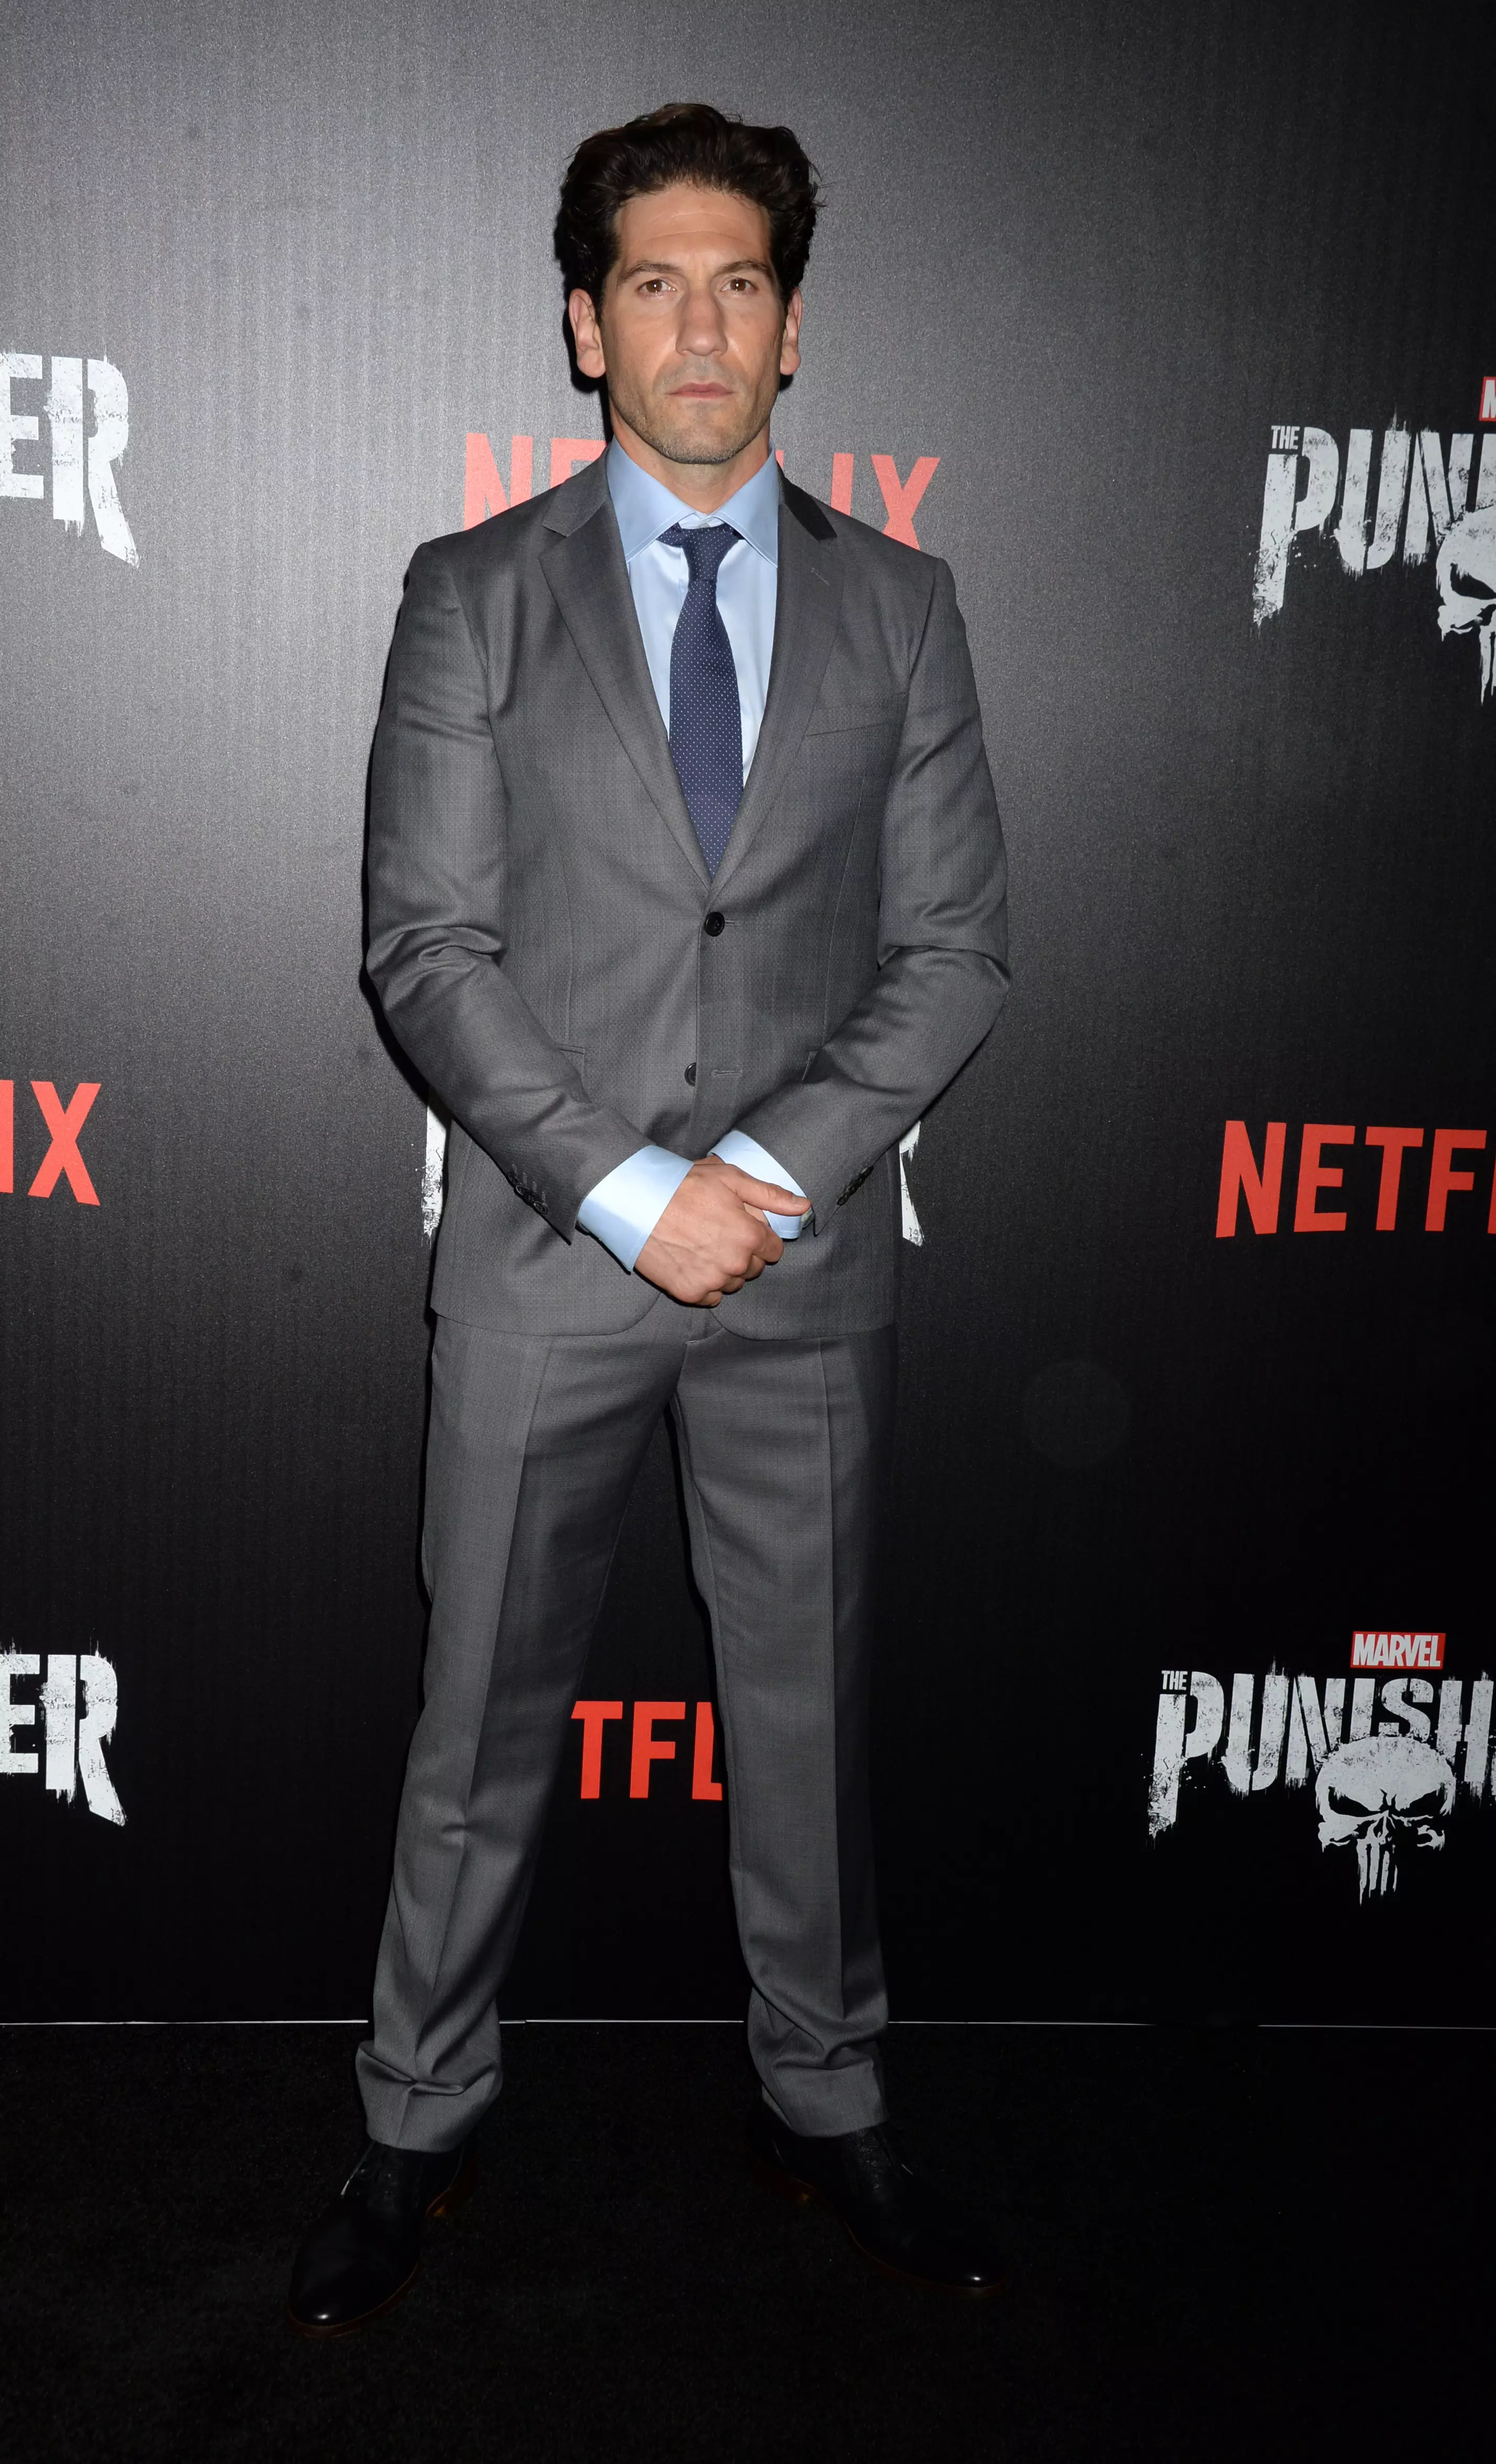 Jon Bernthal attending Marvel's The Punisher premiere on November 6, 2017.